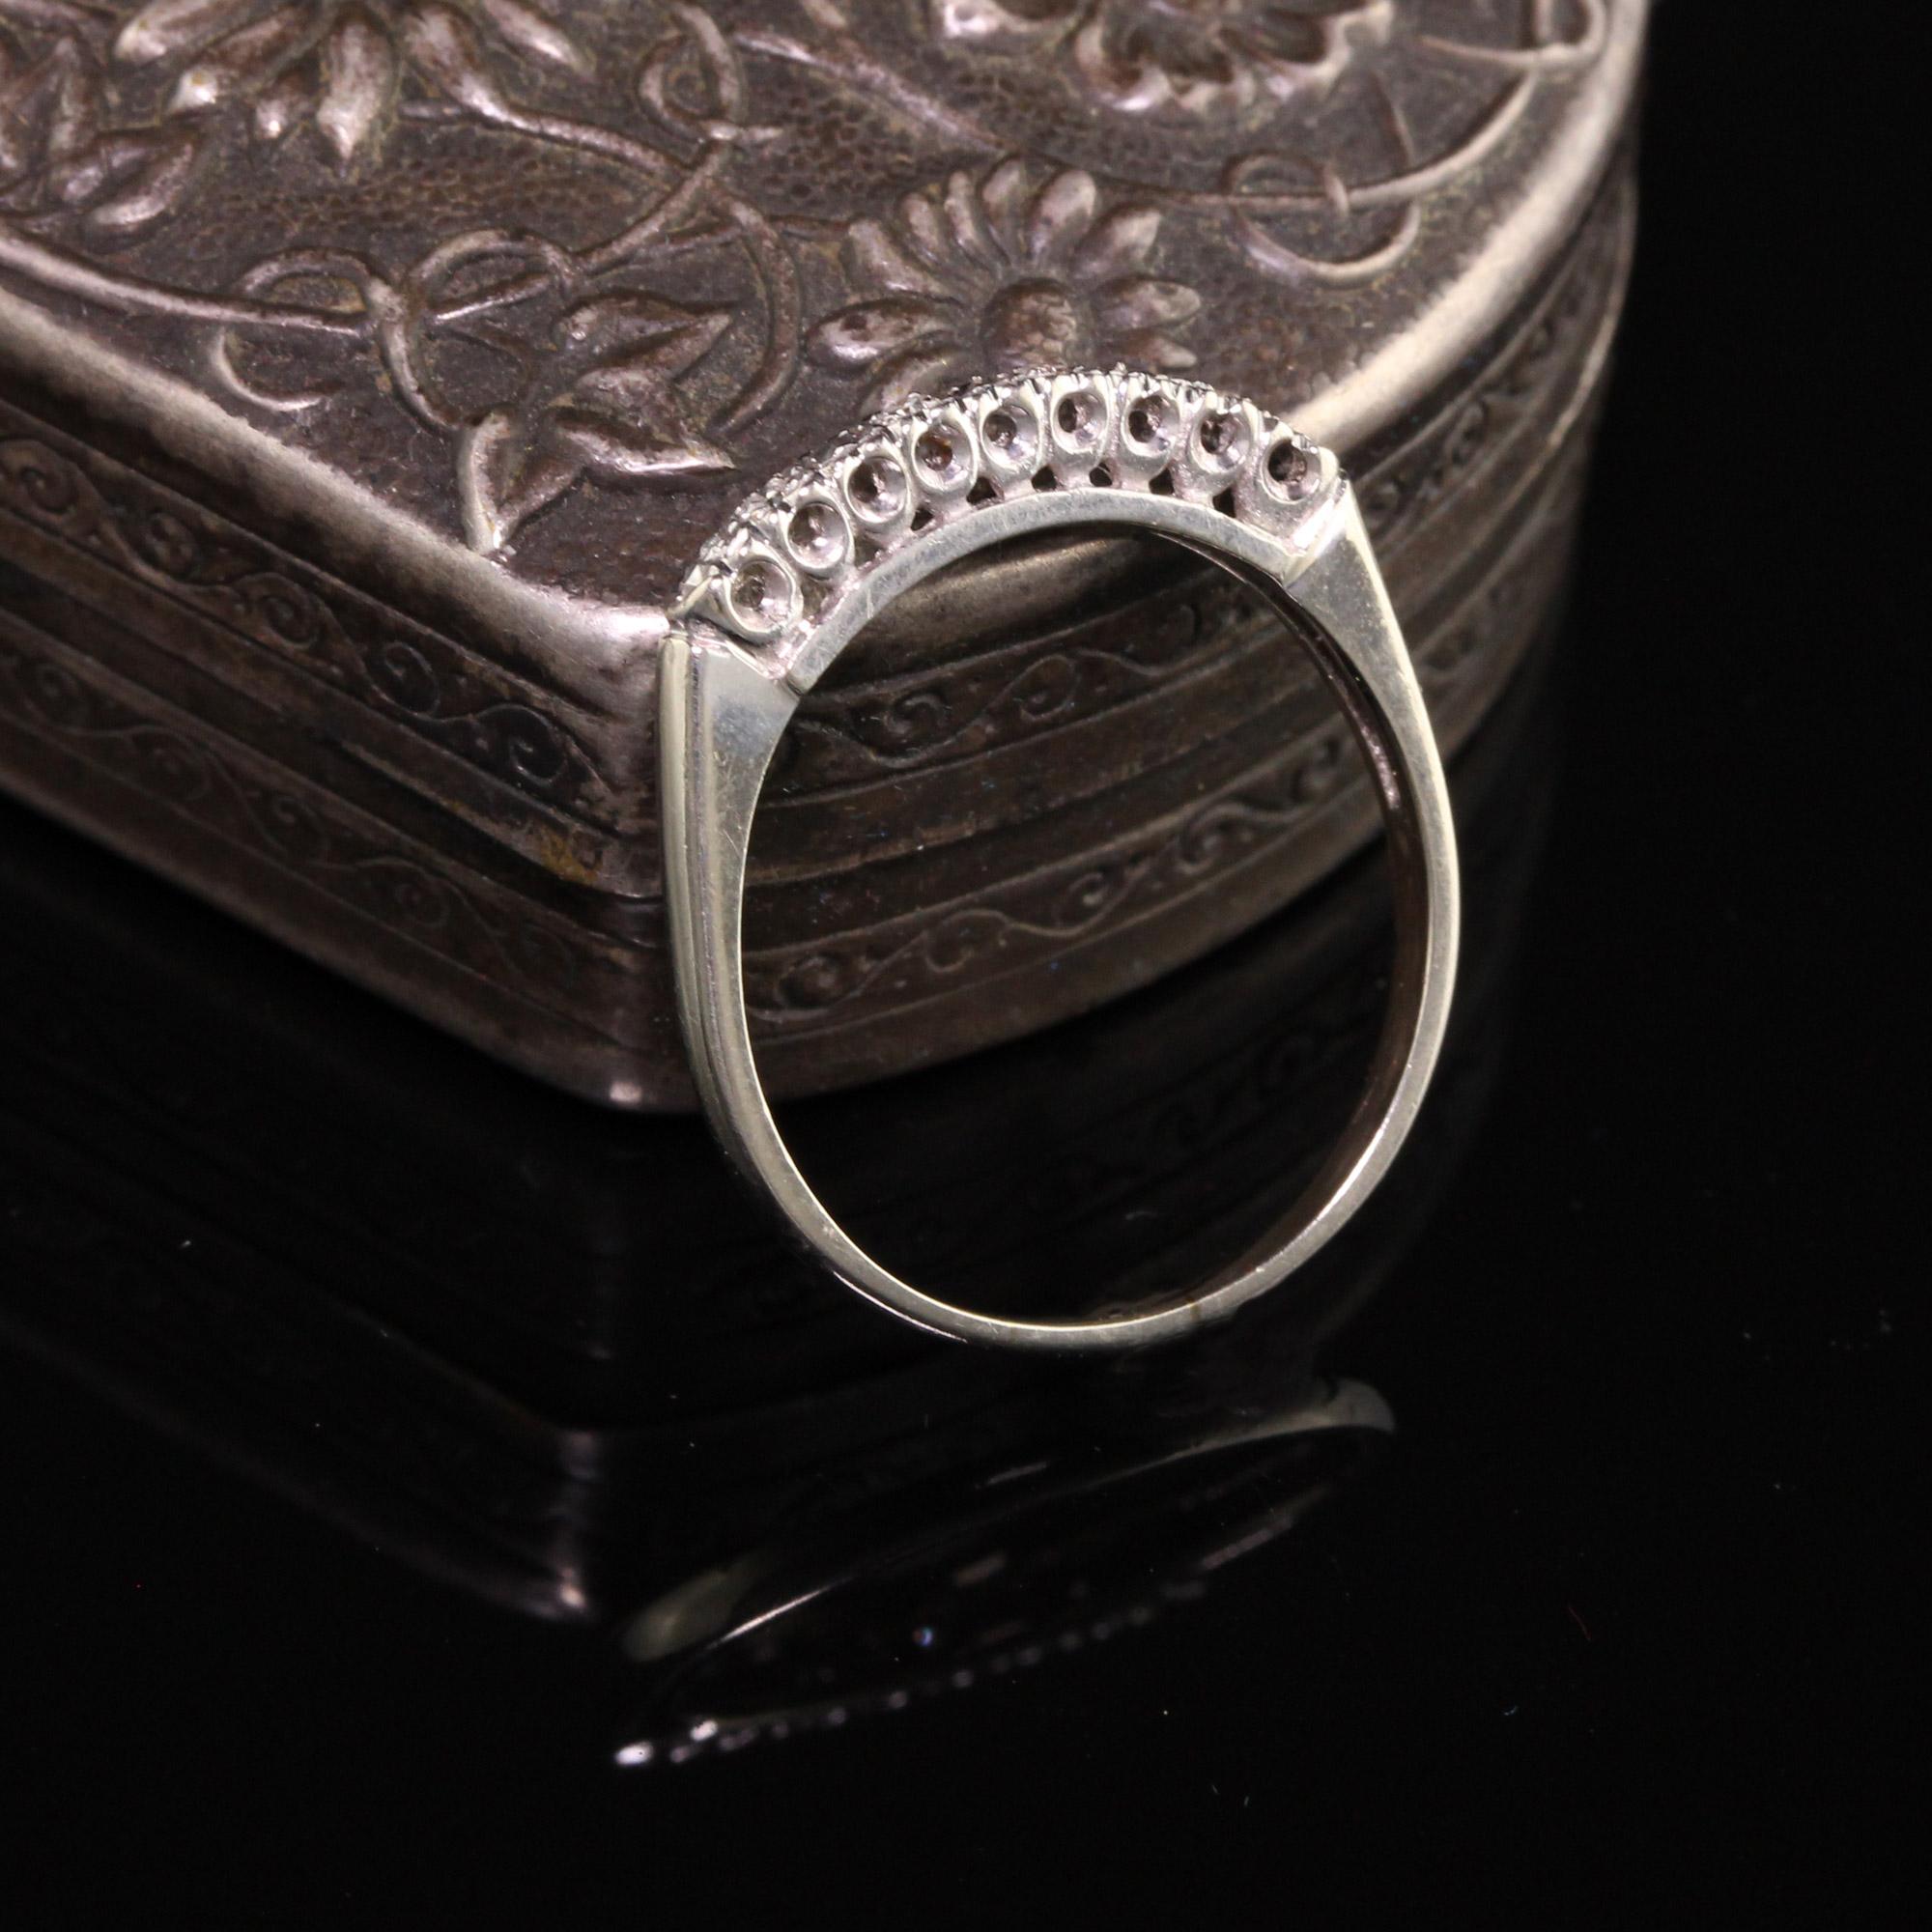 Schöne Vintage Estate 14K White Gold Single Cut Diamond Wedding Band - Größe 6 1/4. Dieser klassische Ring hat 4 Single-Cut-Diamanten auf der Oberseite und Diamantschnitt Weißgold zwischen jedem Diamanten.

Artikel #R0949

Metall: 14K